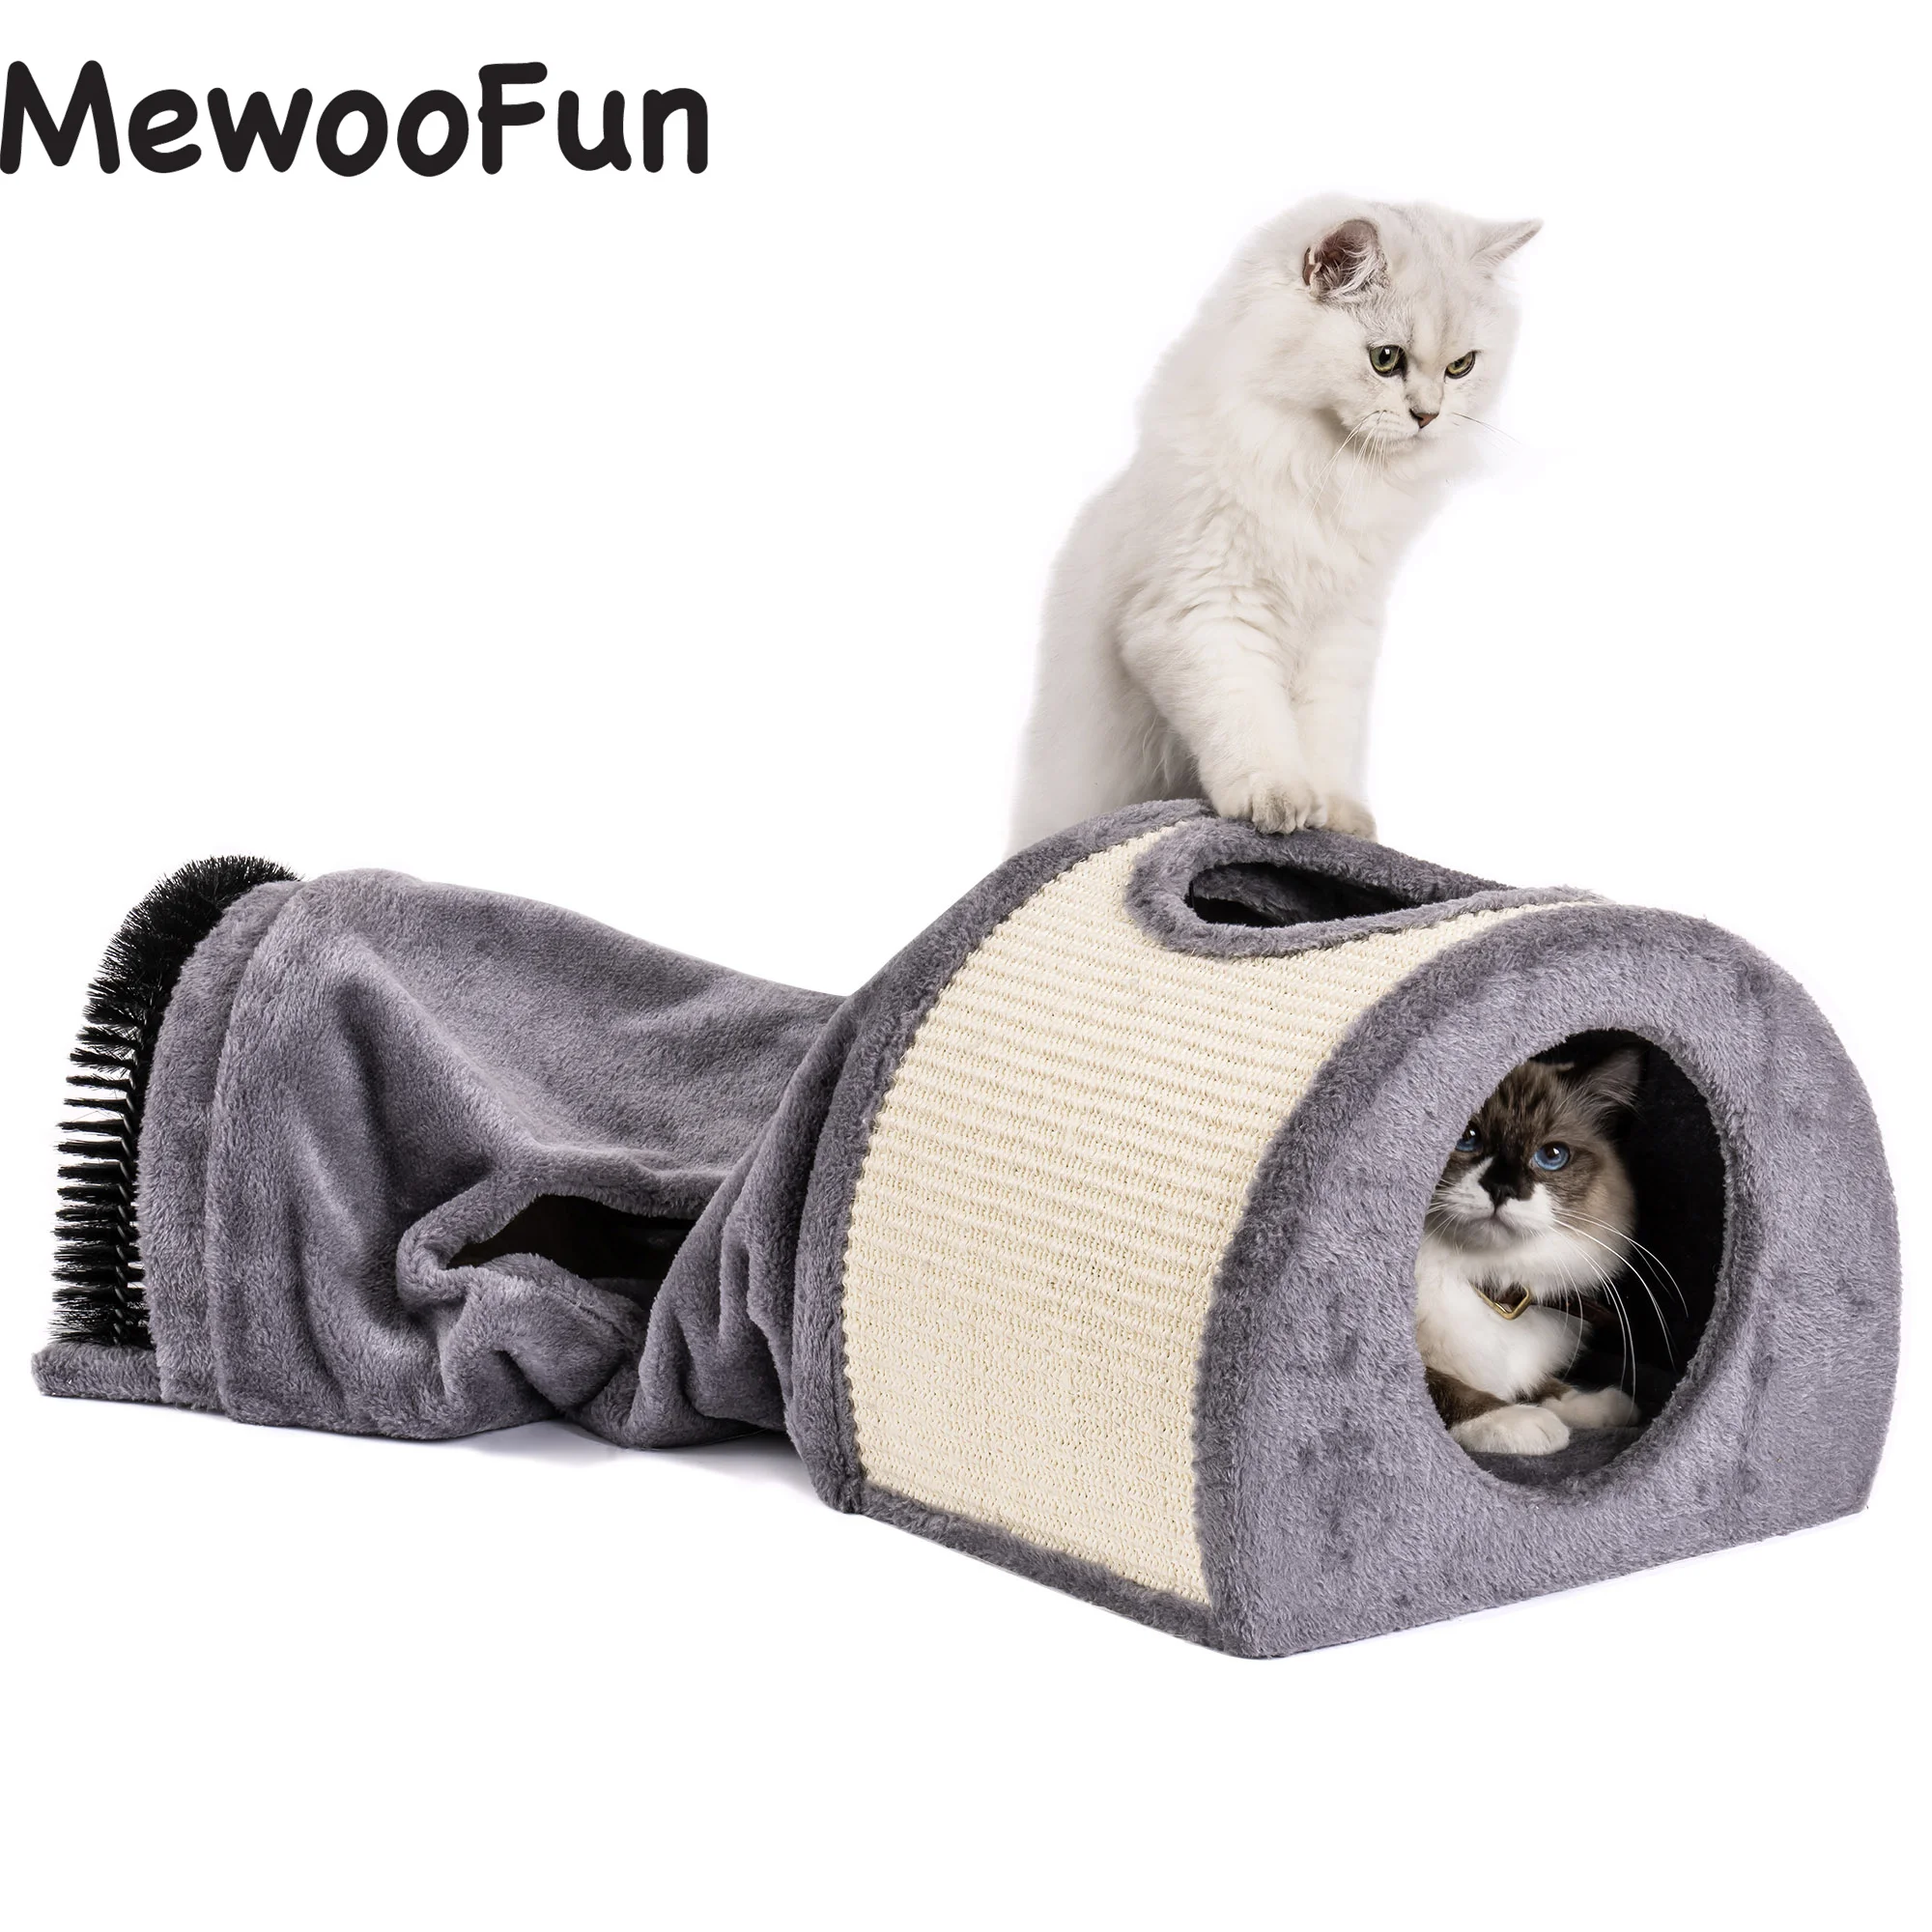 Mewoofun Cat Tunelit Cat Shtrat Lodra të Butë, të Rehatshme Multifunction Groomer Masazh Guximshëm Sisal Qilim të NA Mbështetur Dropshipping . ' - ' . 0